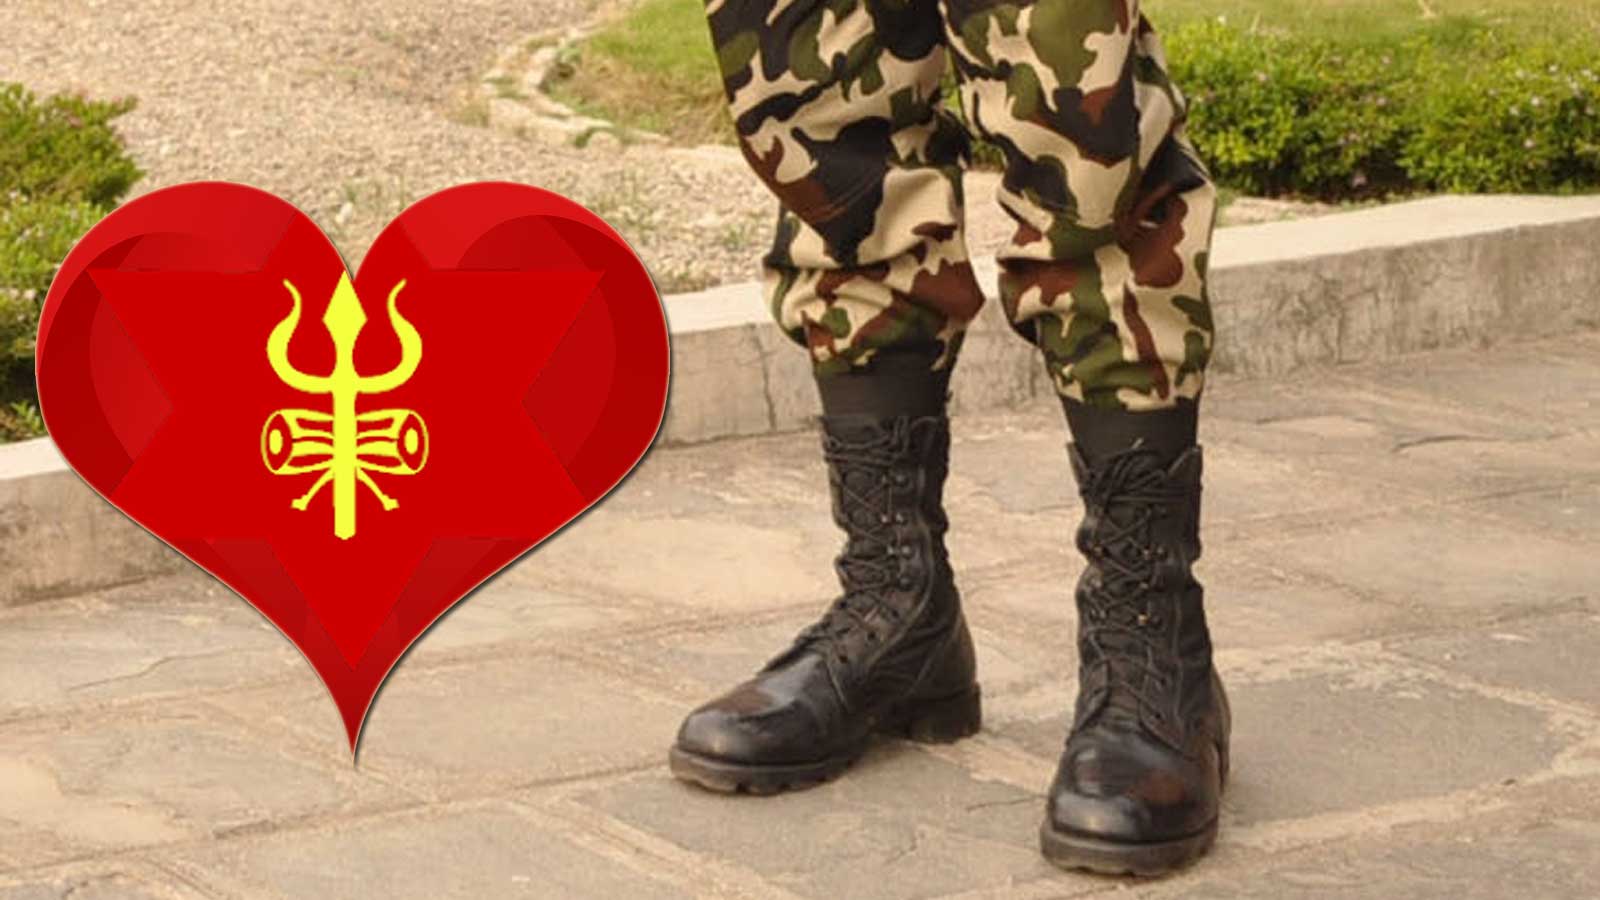 प्रेम प्रकरणले सेनामा लफडाः विवाहित पुरुष र अविवाहित महिलाको प्रेम विरुद्ध मुद्दा